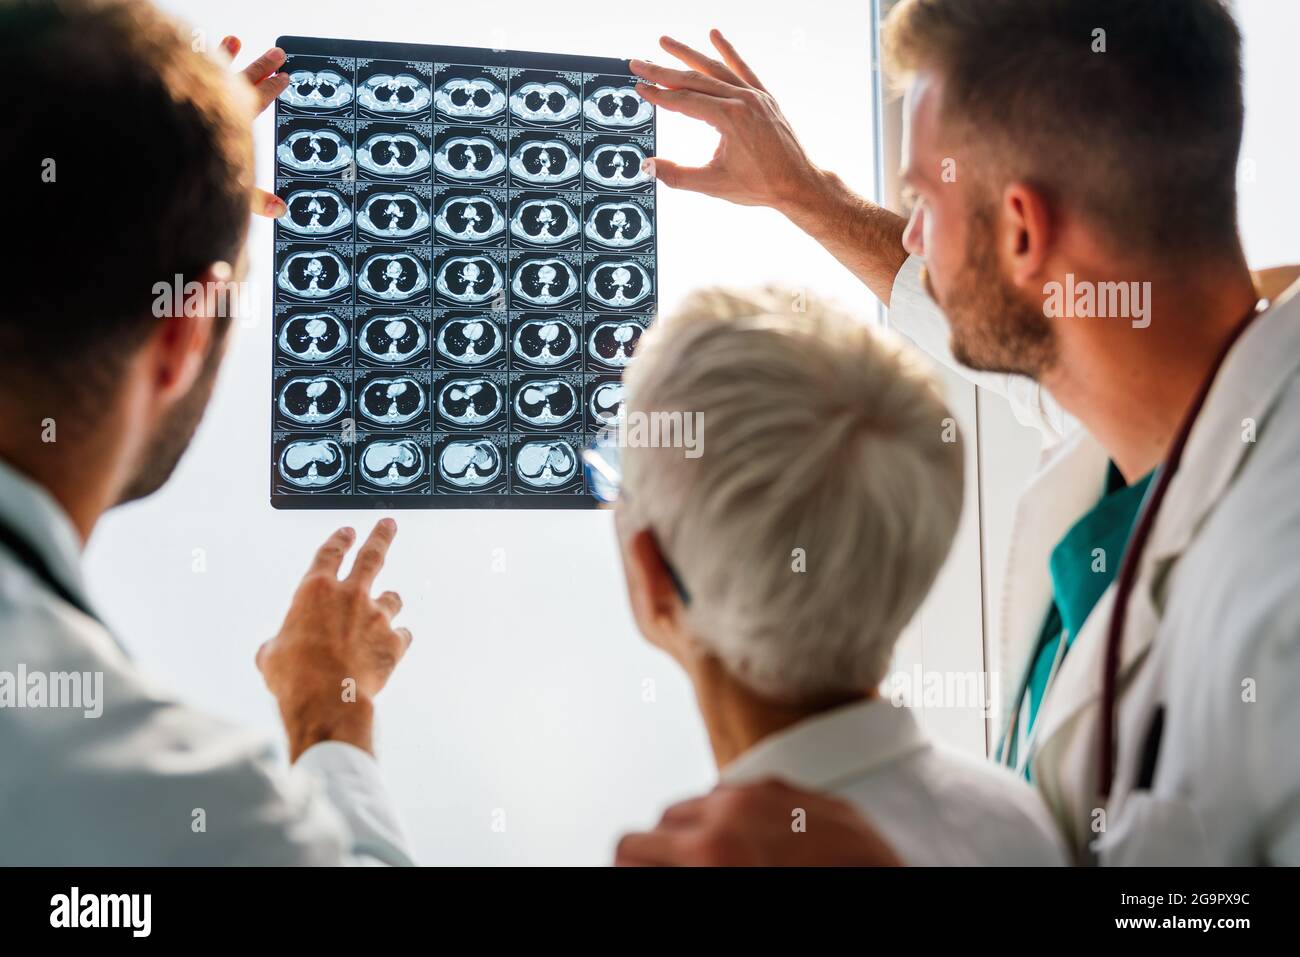 Médecins discutant du diagnostic du patient en regardant les rayons X dans un hôpital Banque D'Images